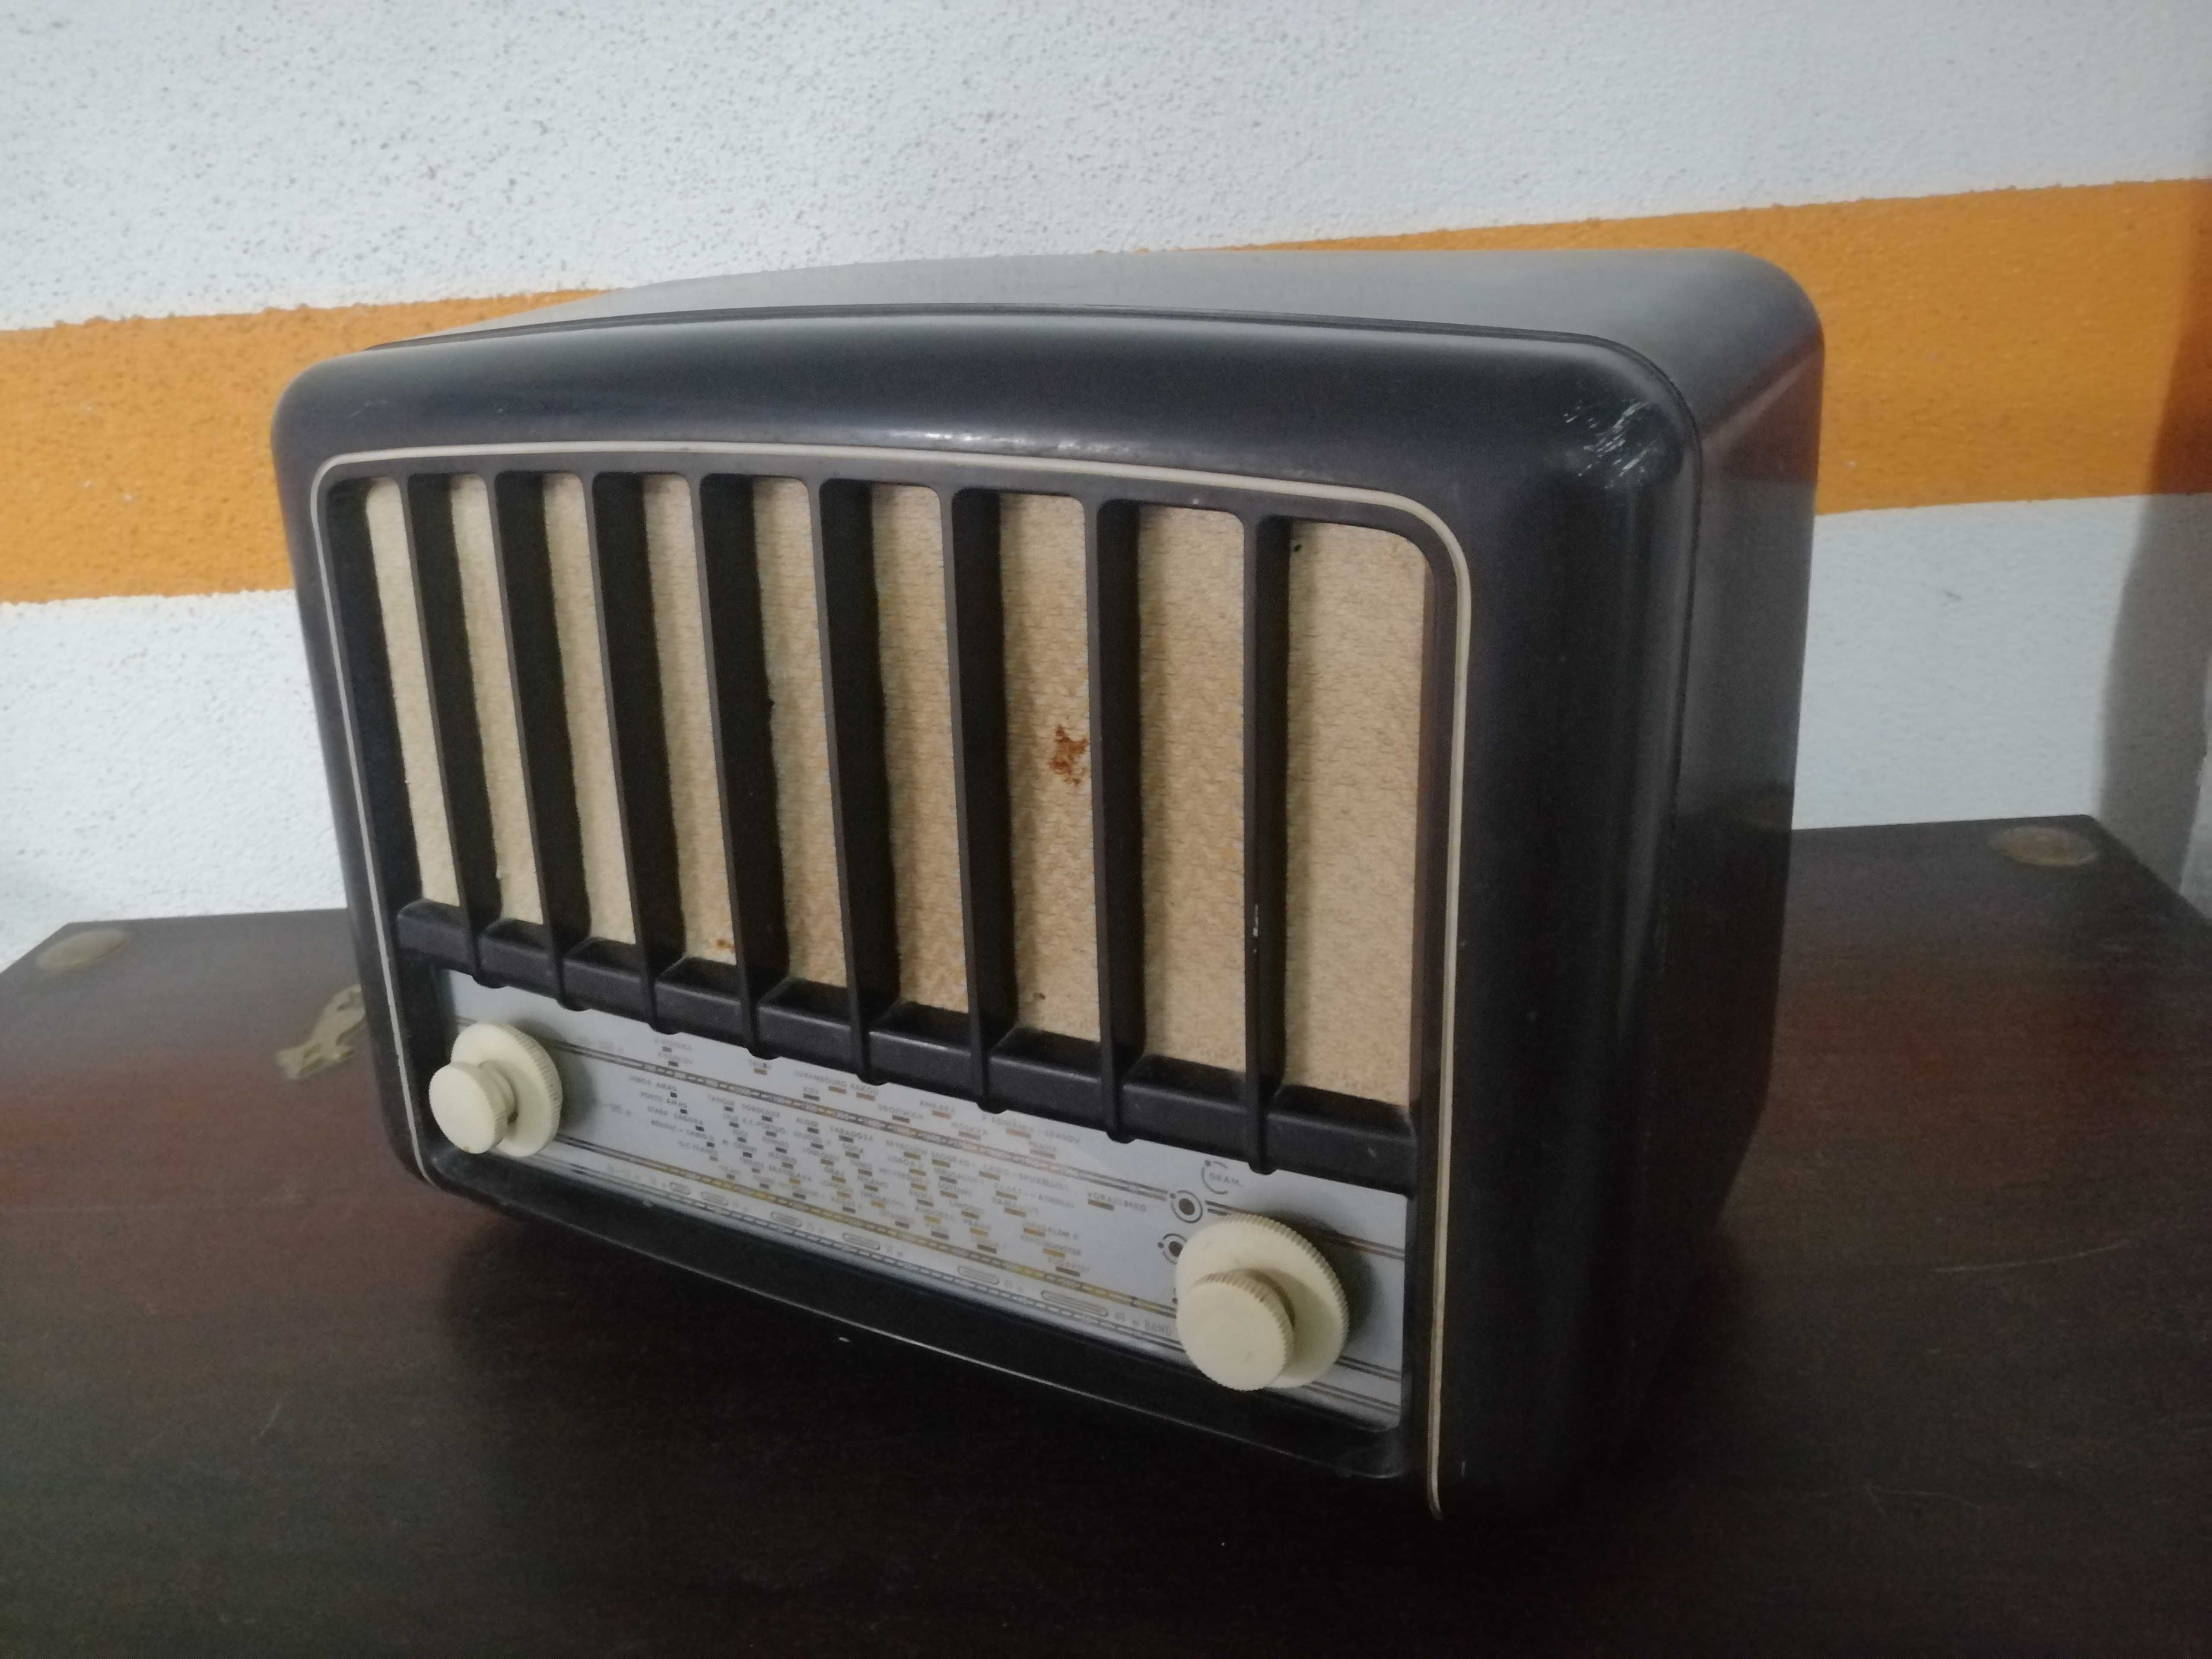 Rádio antigo Mediator M234U a funcionar